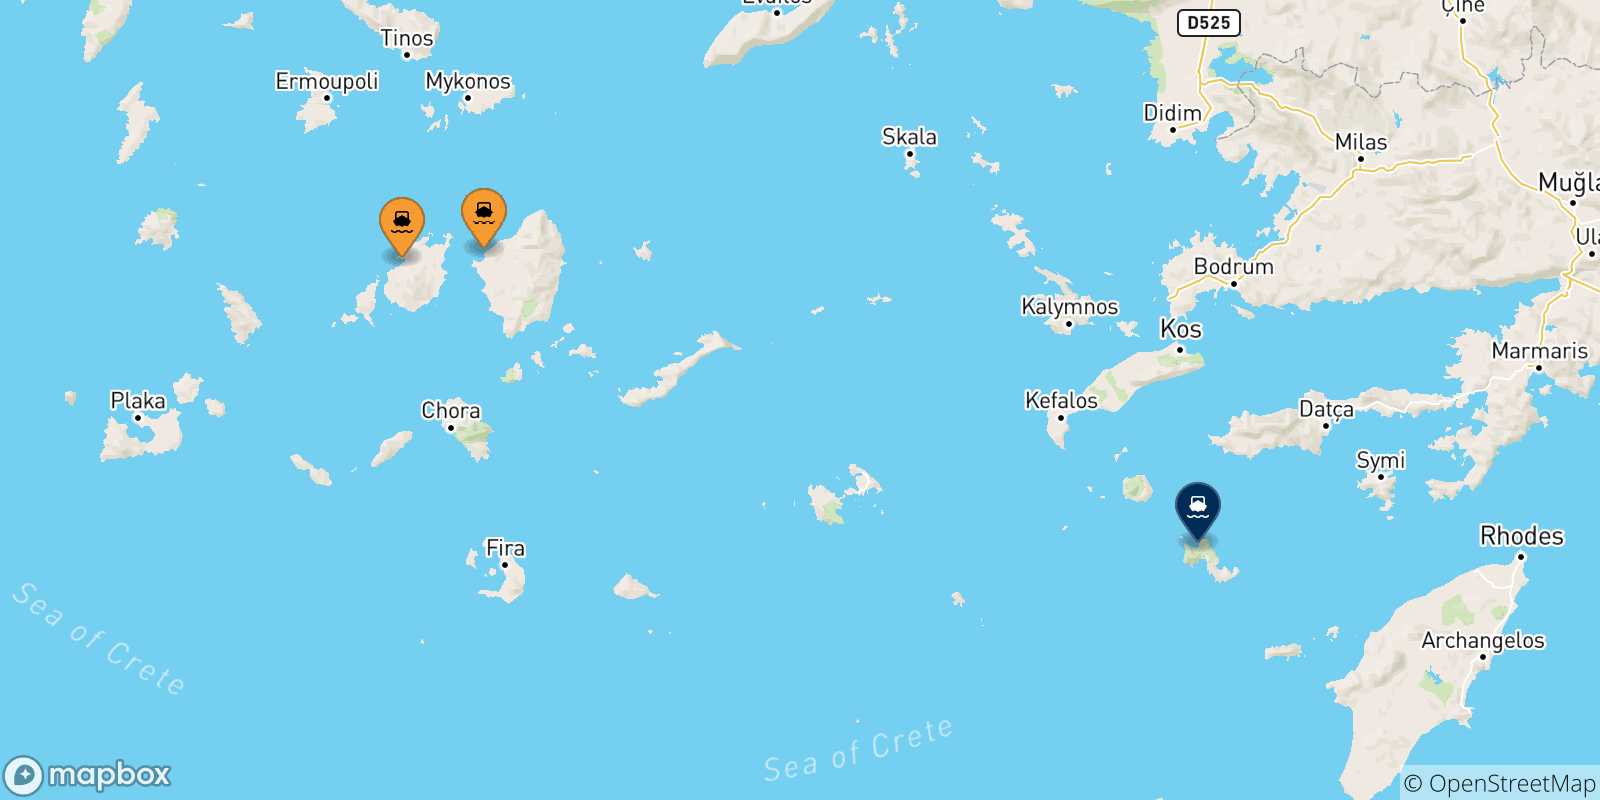 Mappa delle possibili rotte tra le Isole Cicladi e Tilos